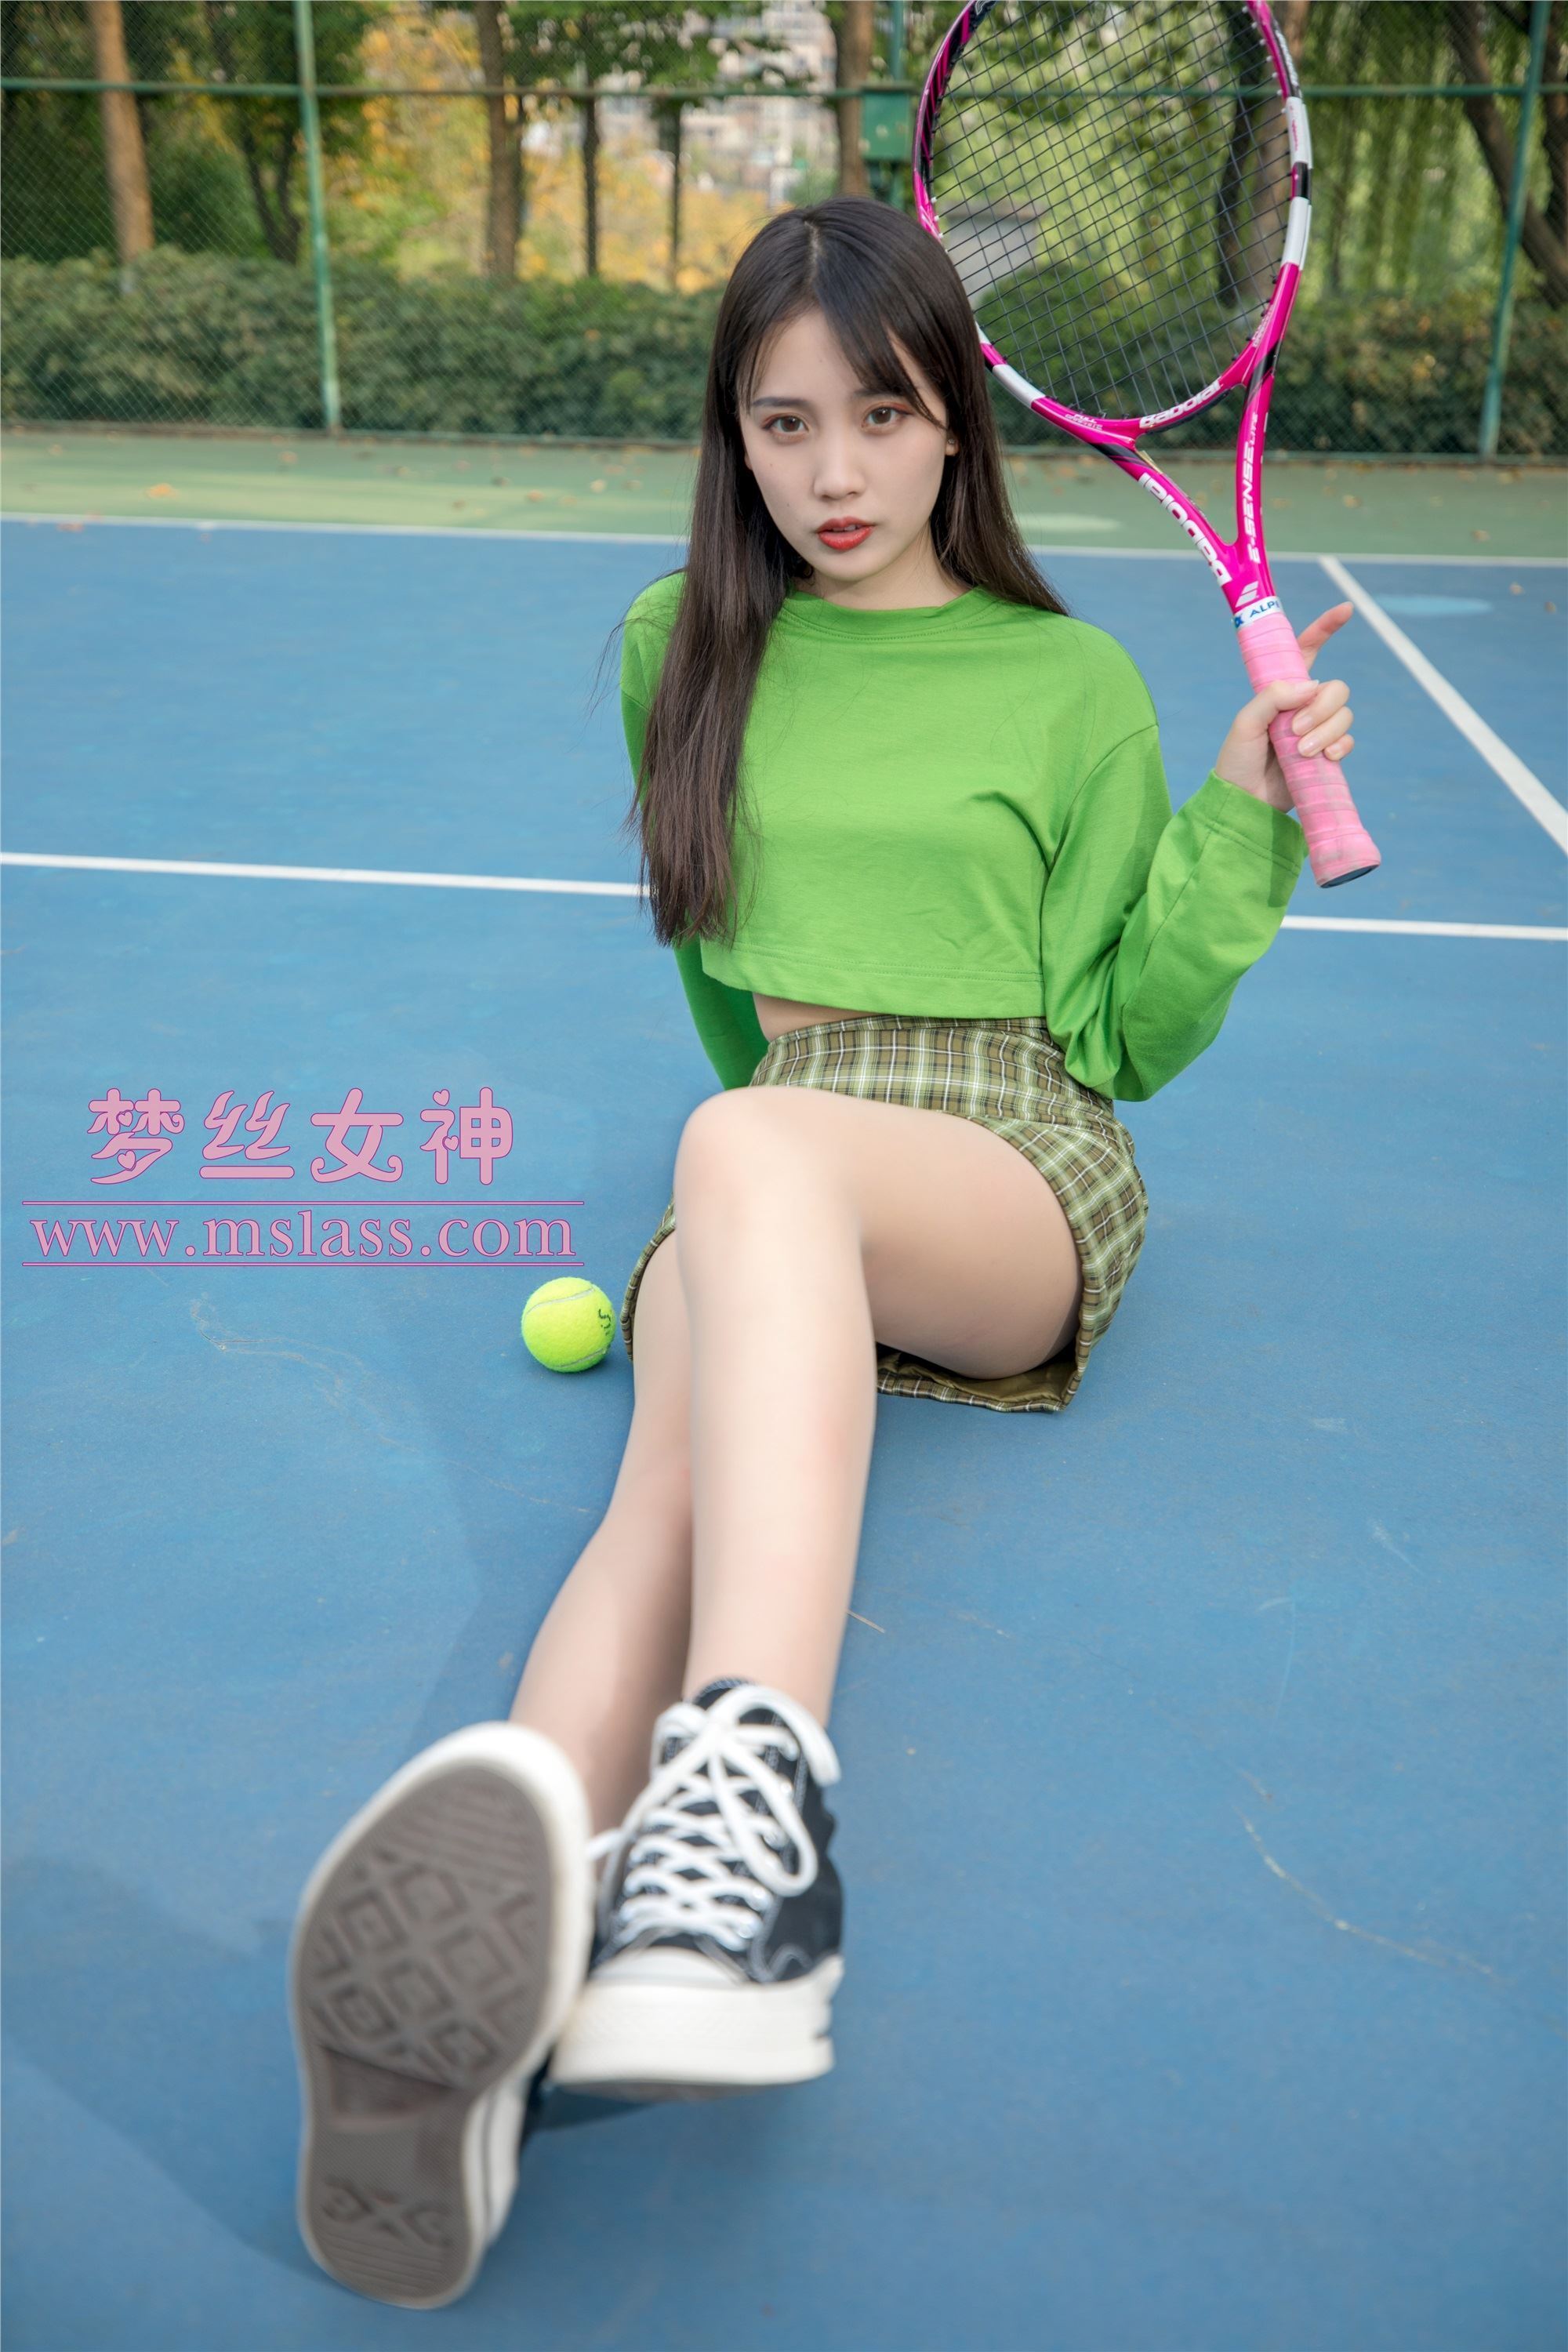 Mslass goddess of dream silk - xiangxuan tennis girl